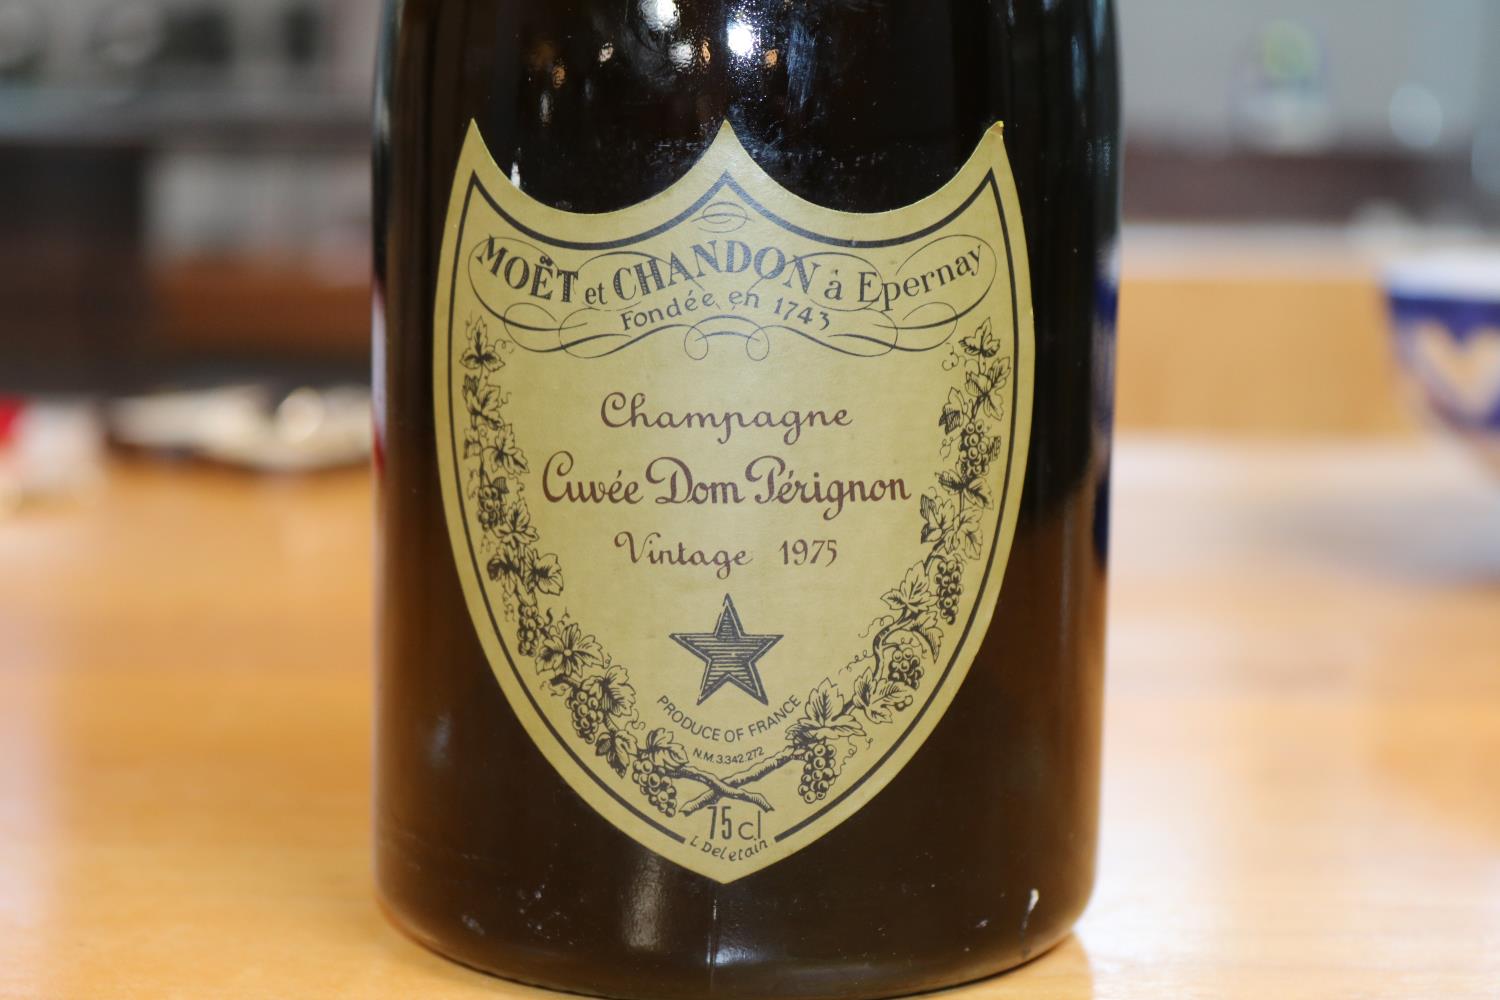 Bottle of Moet et Chandon Champagne Cuvee Don Perignon Vintage 1975 - Image 2 of 2